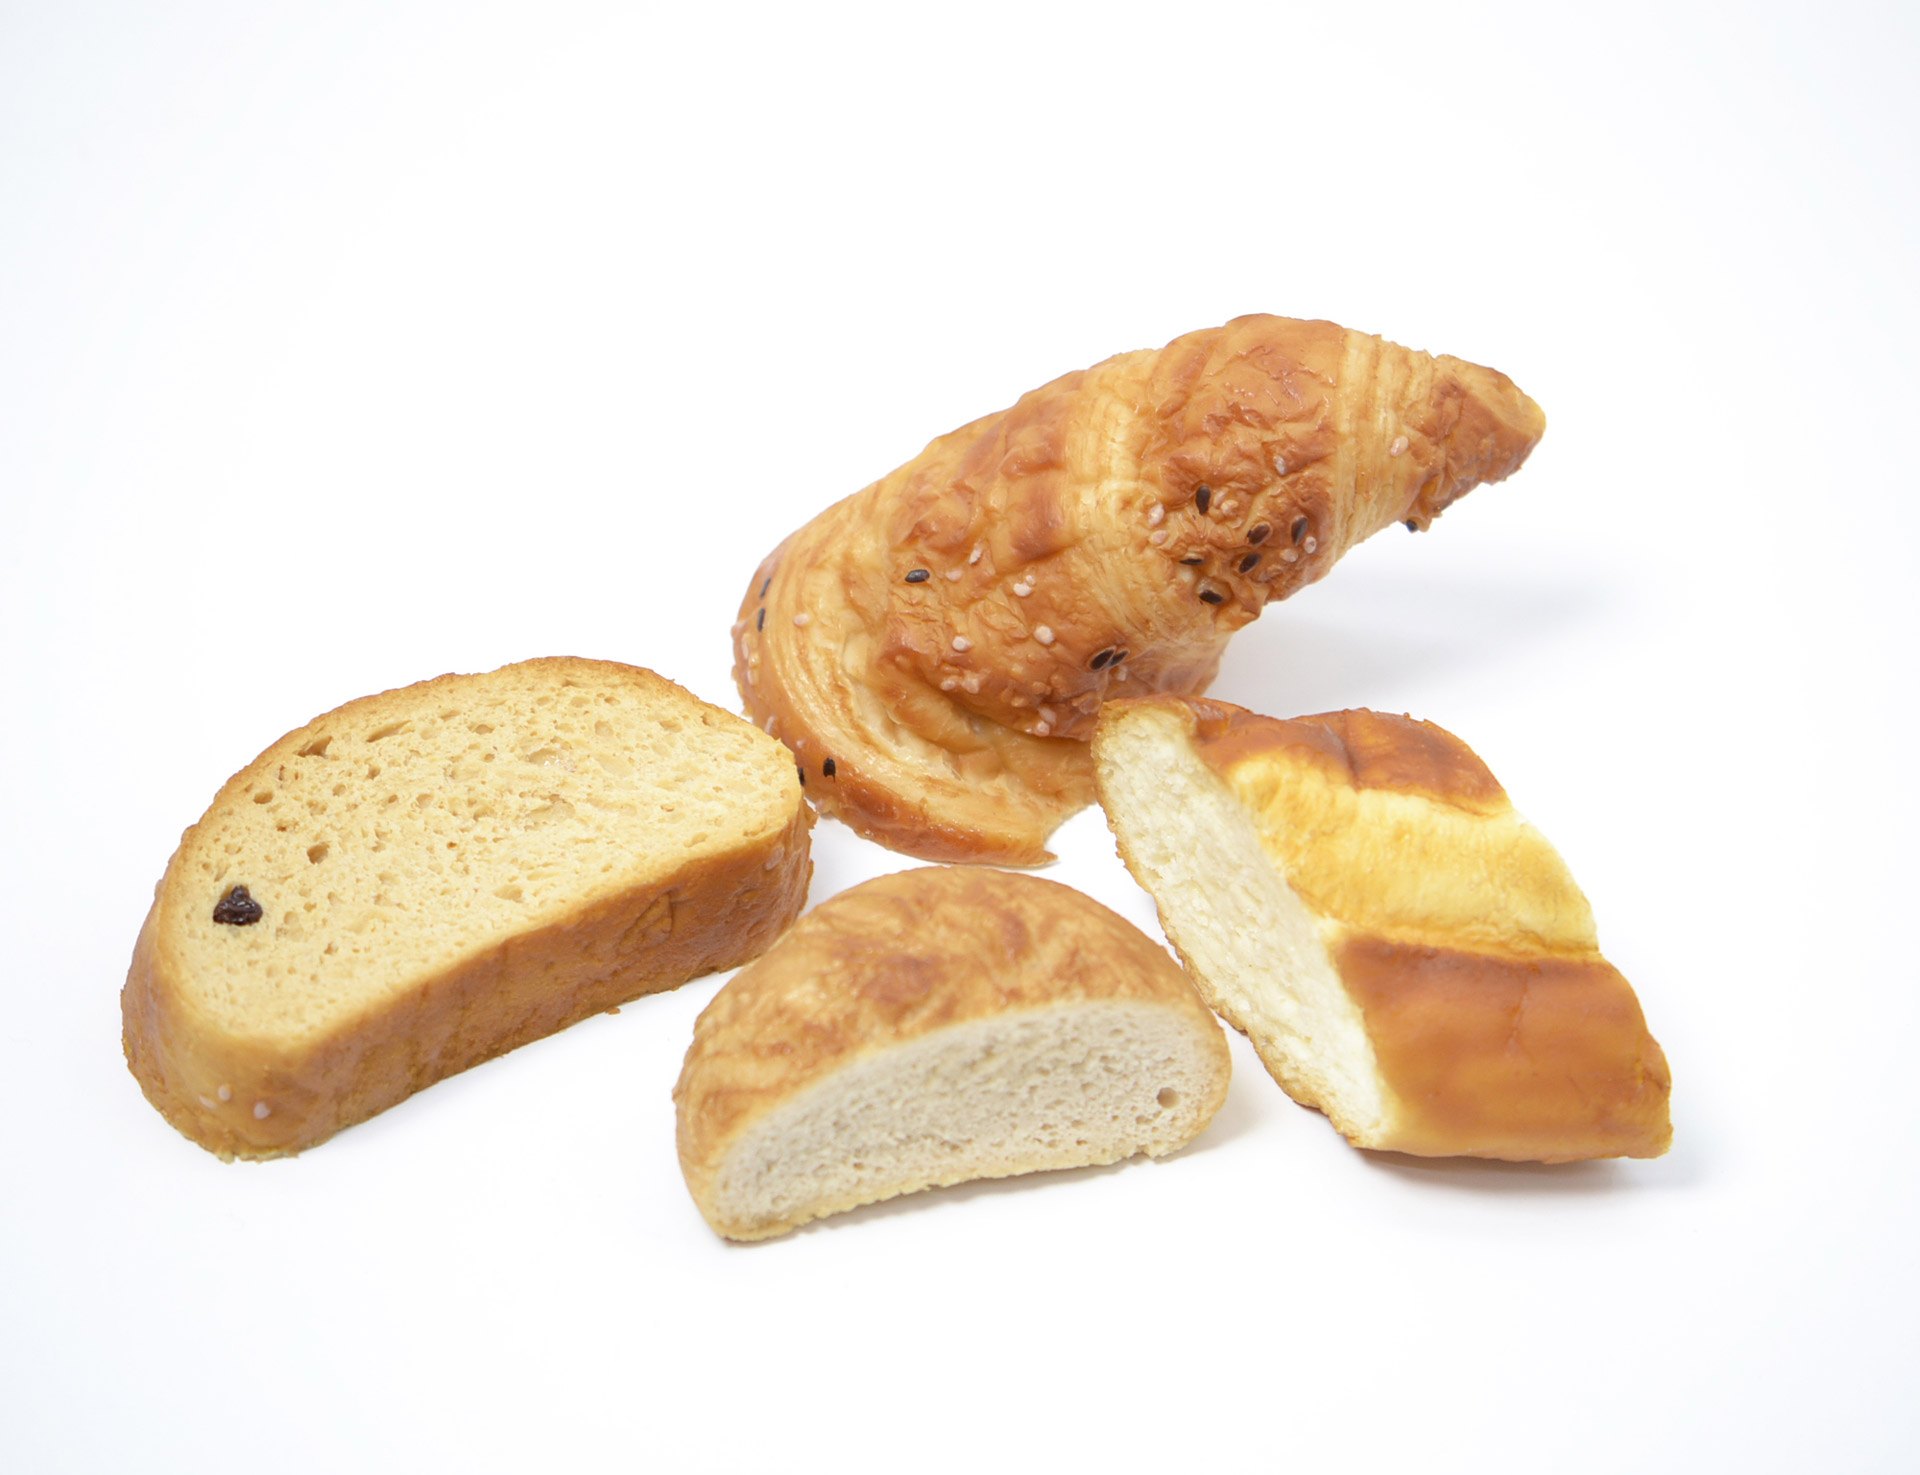 Raisin-Bread and Croissant Bread Pudding